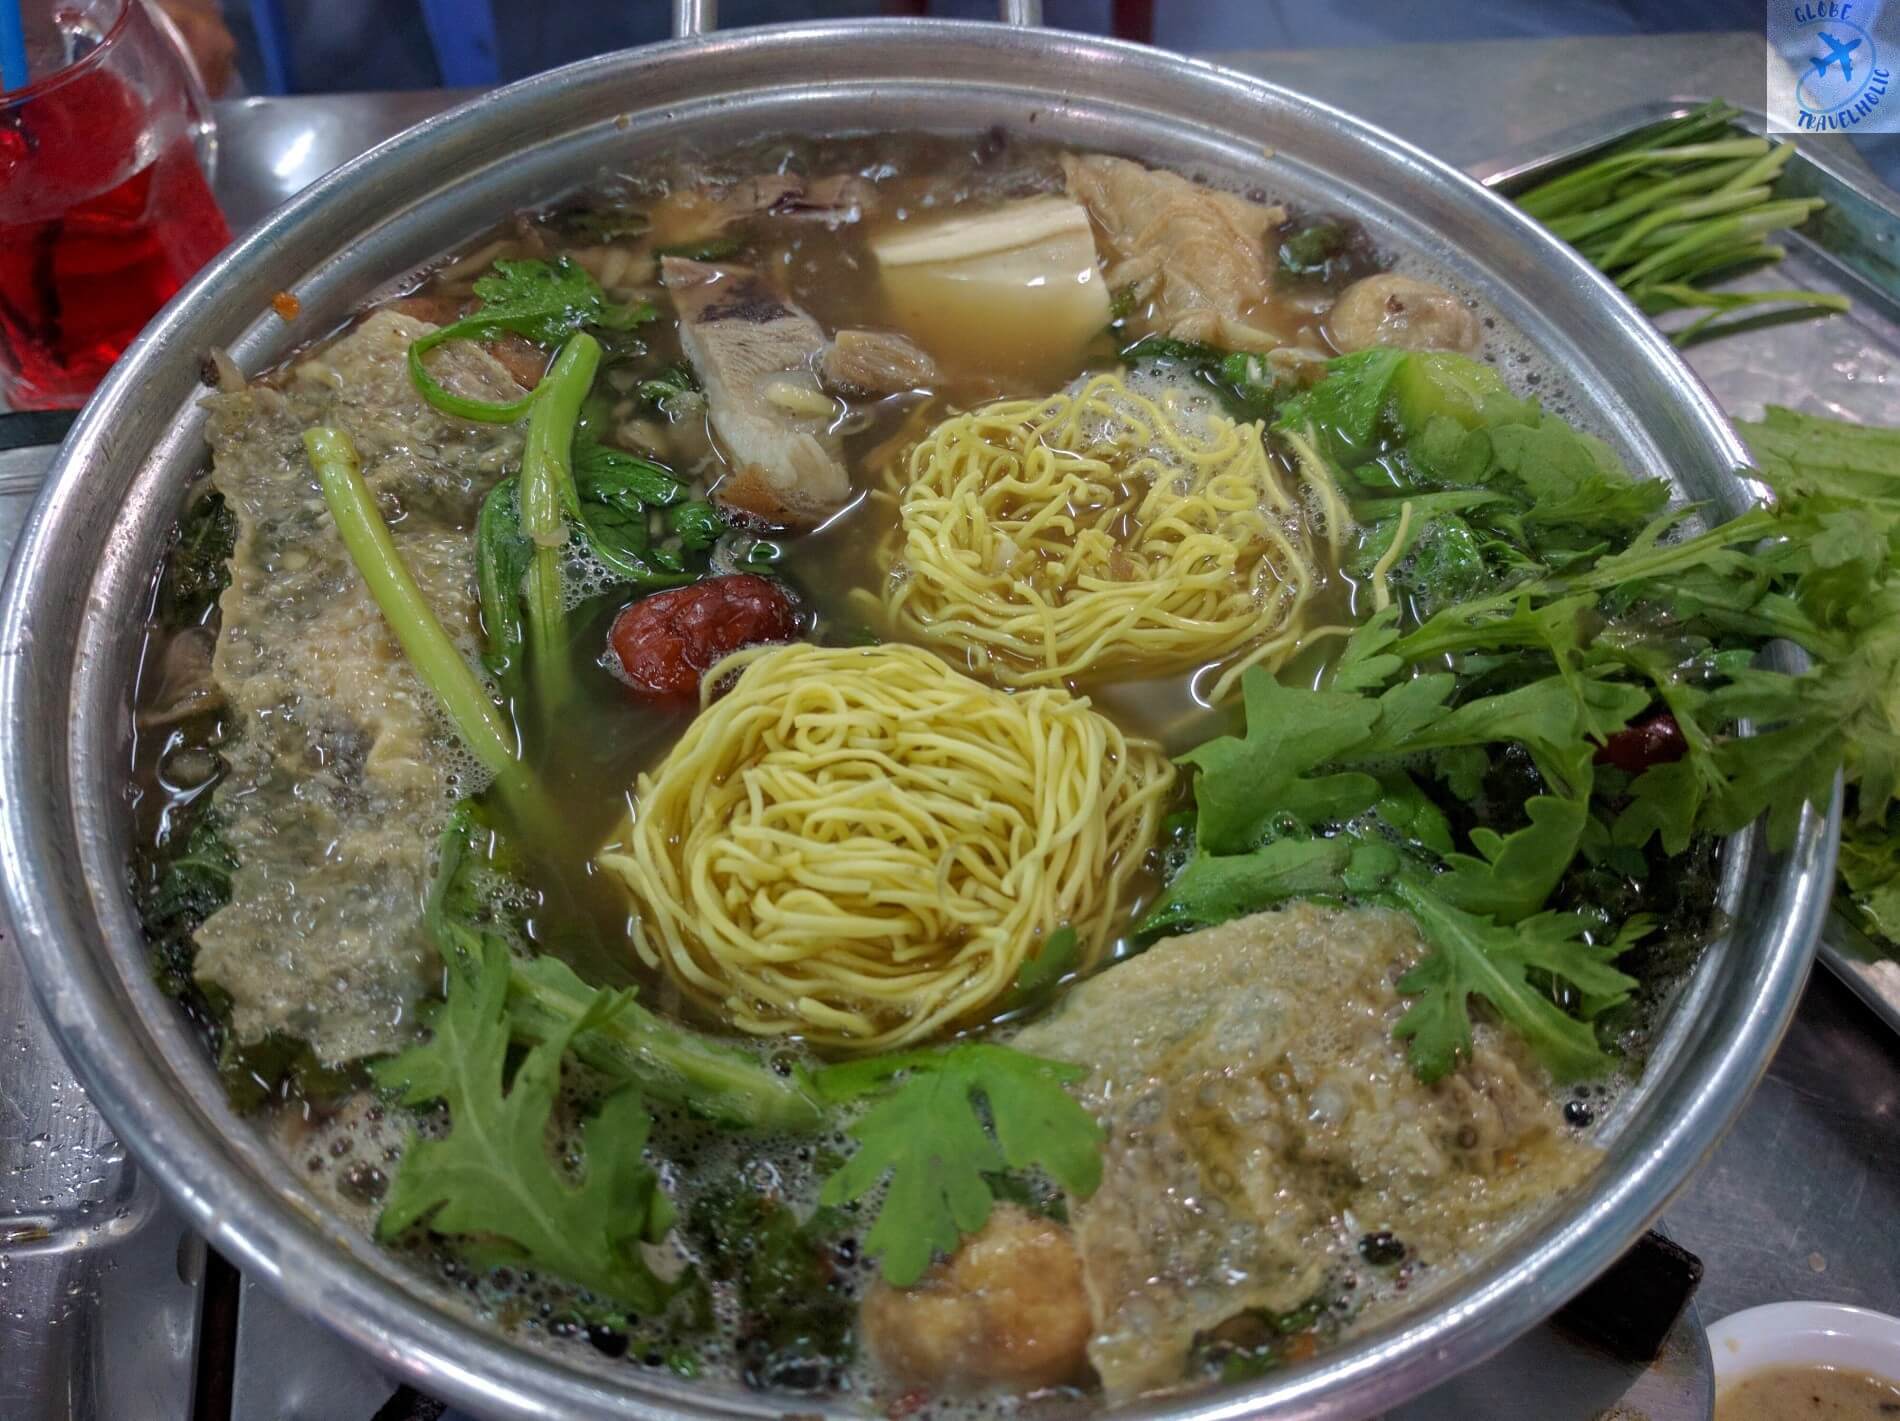 10 Quán dê Sài Gòn – TPHCM ngon nức tiếng khi “chồng ăn vợ mê”